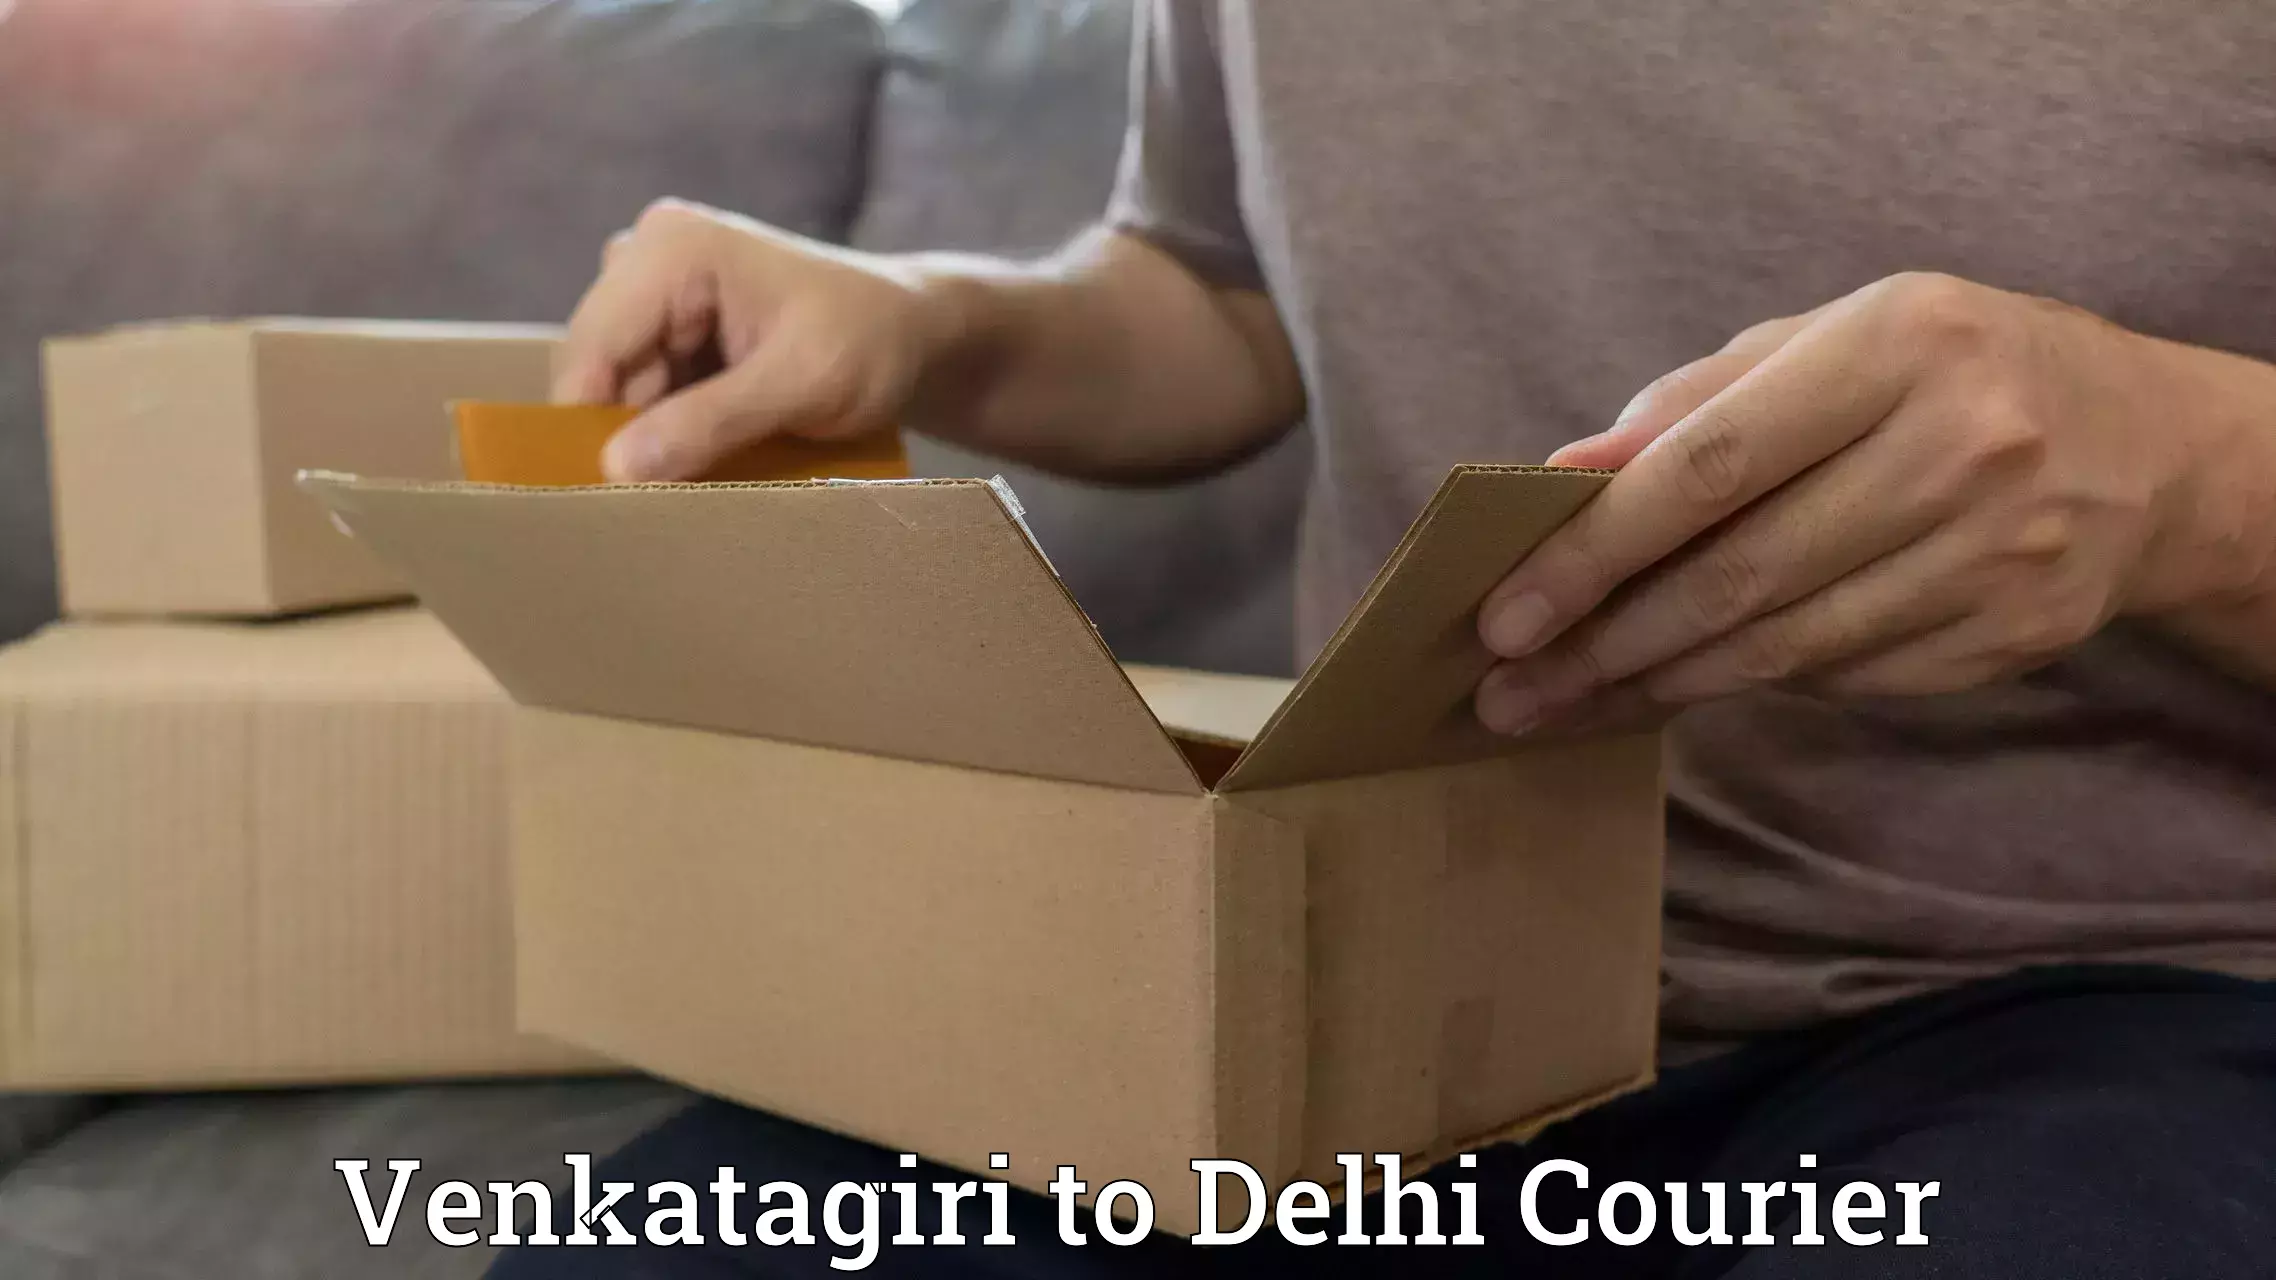 State-of-the-art courier technology Venkatagiri to University of Delhi